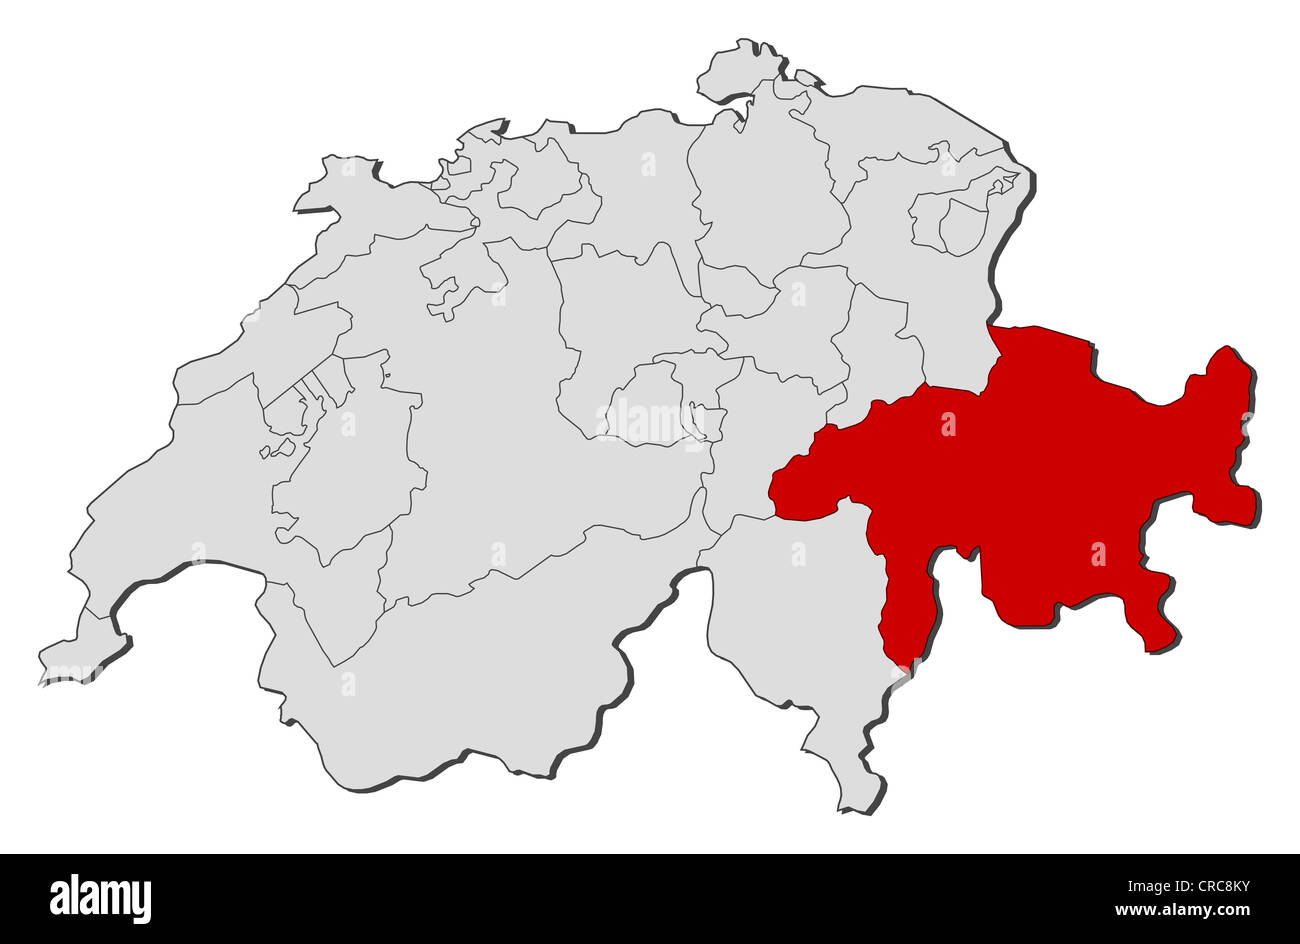 Politische Karte der Schweiz mit den verschiedenen Kantonen, wo Graubünden markiert ist. Stockfoto